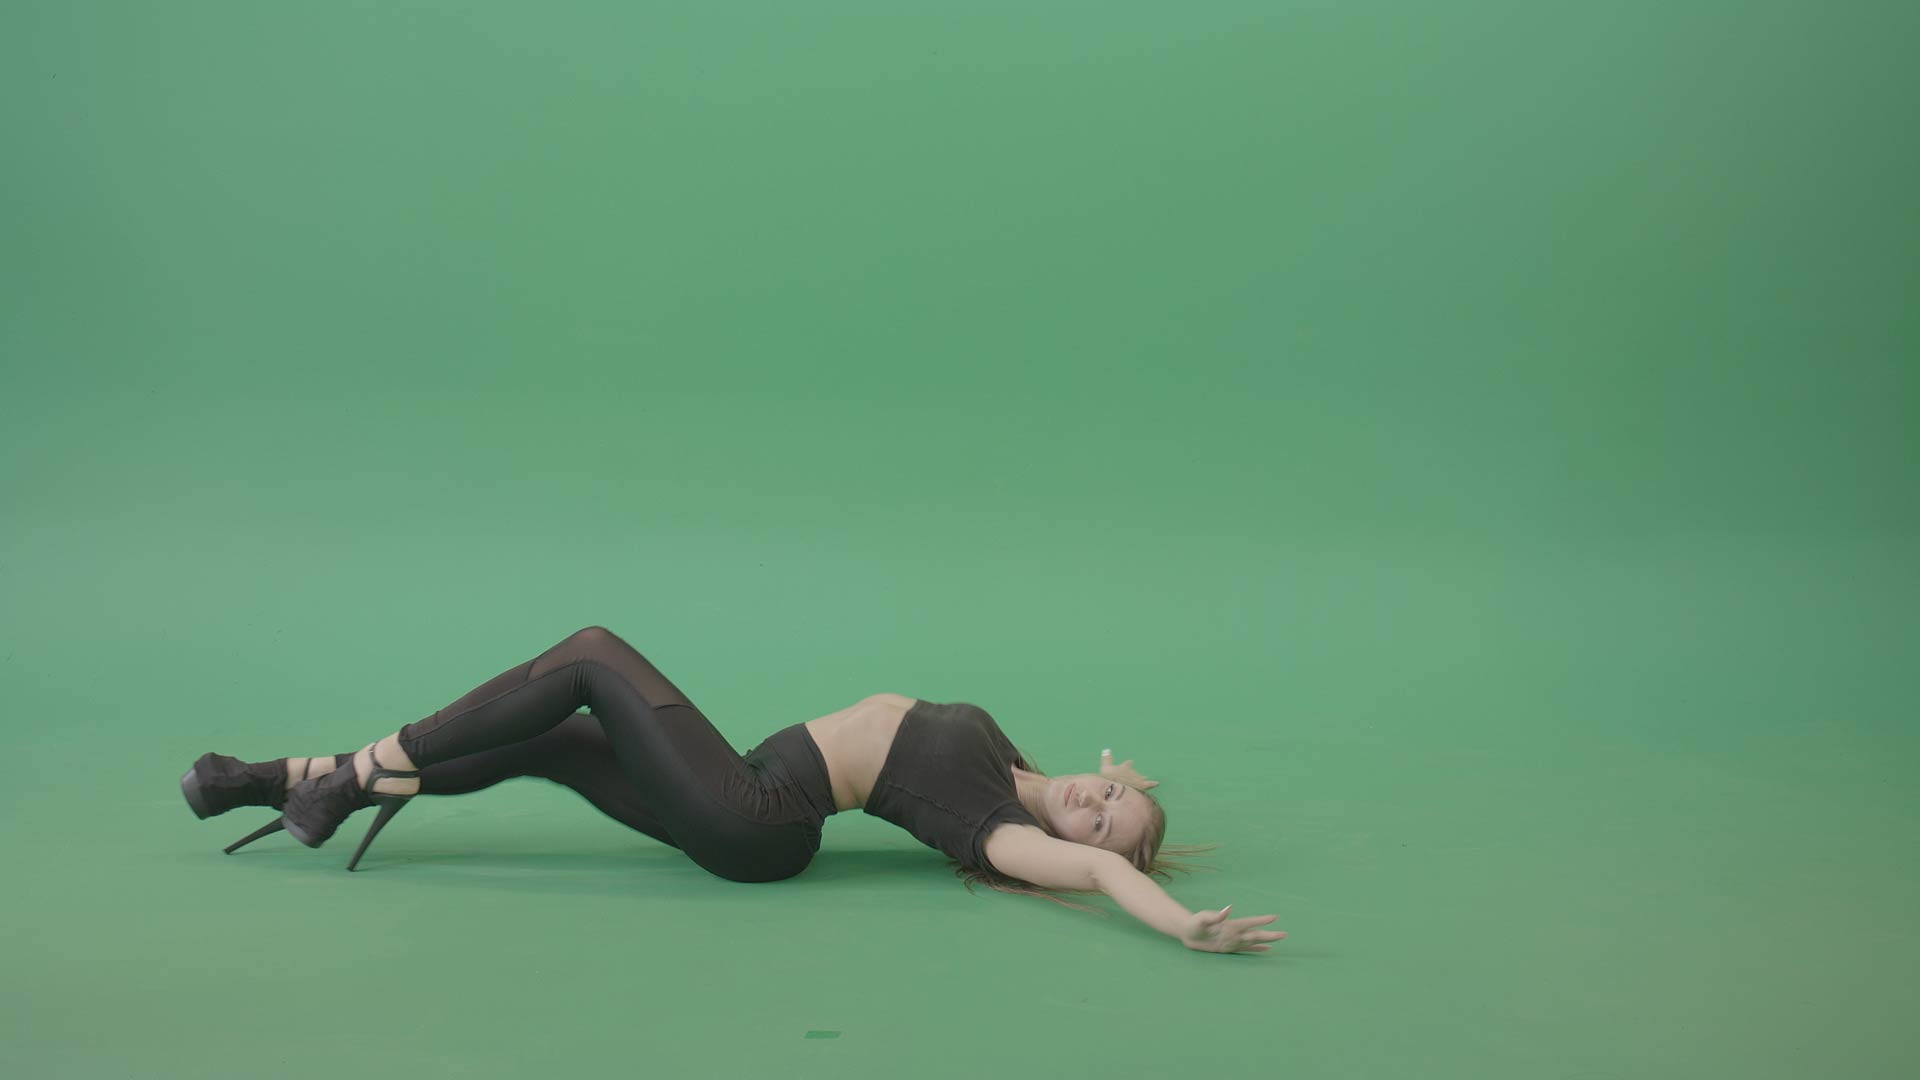 Modern-dance-green-screen-video-footage